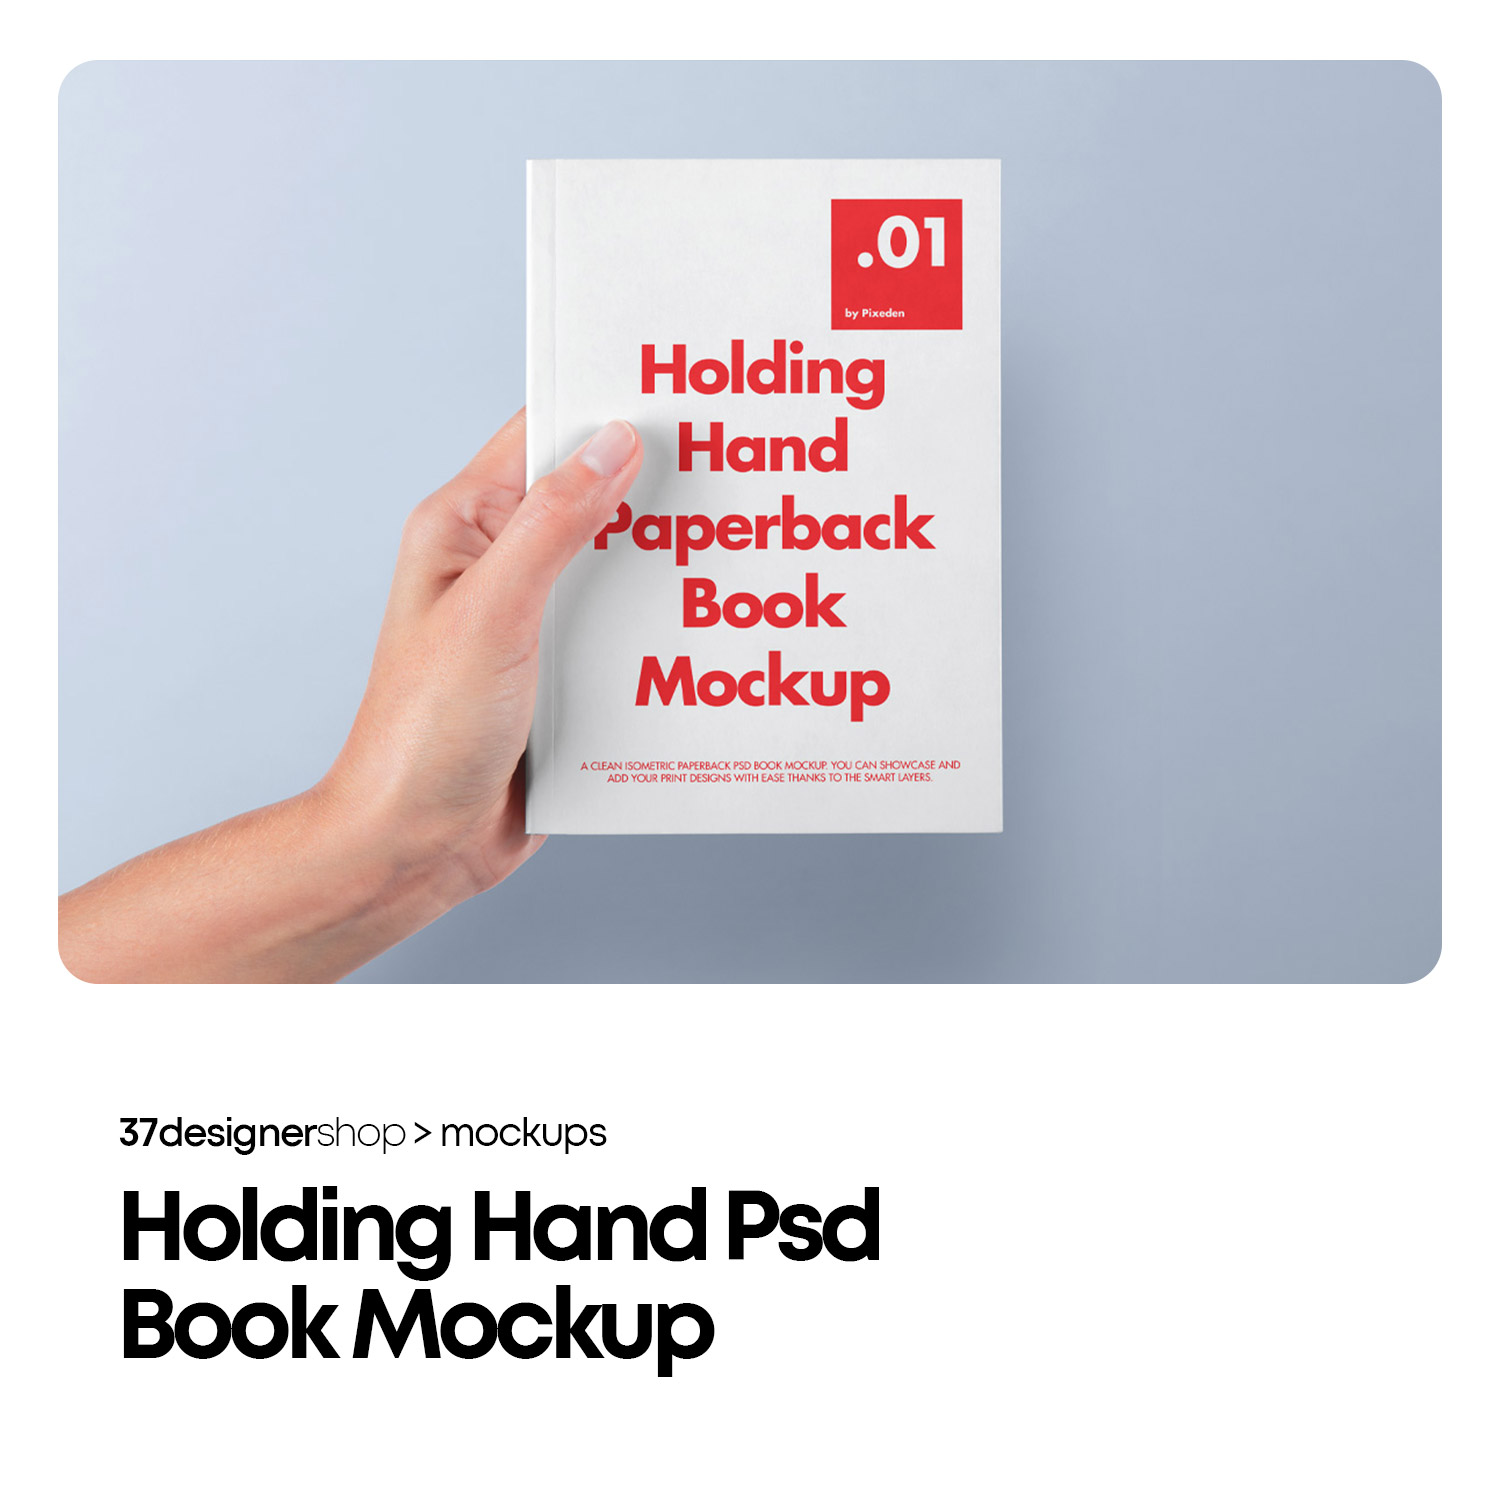 手持书籍封面设计效果展示样机mockup智能贴图psd设计素材模版